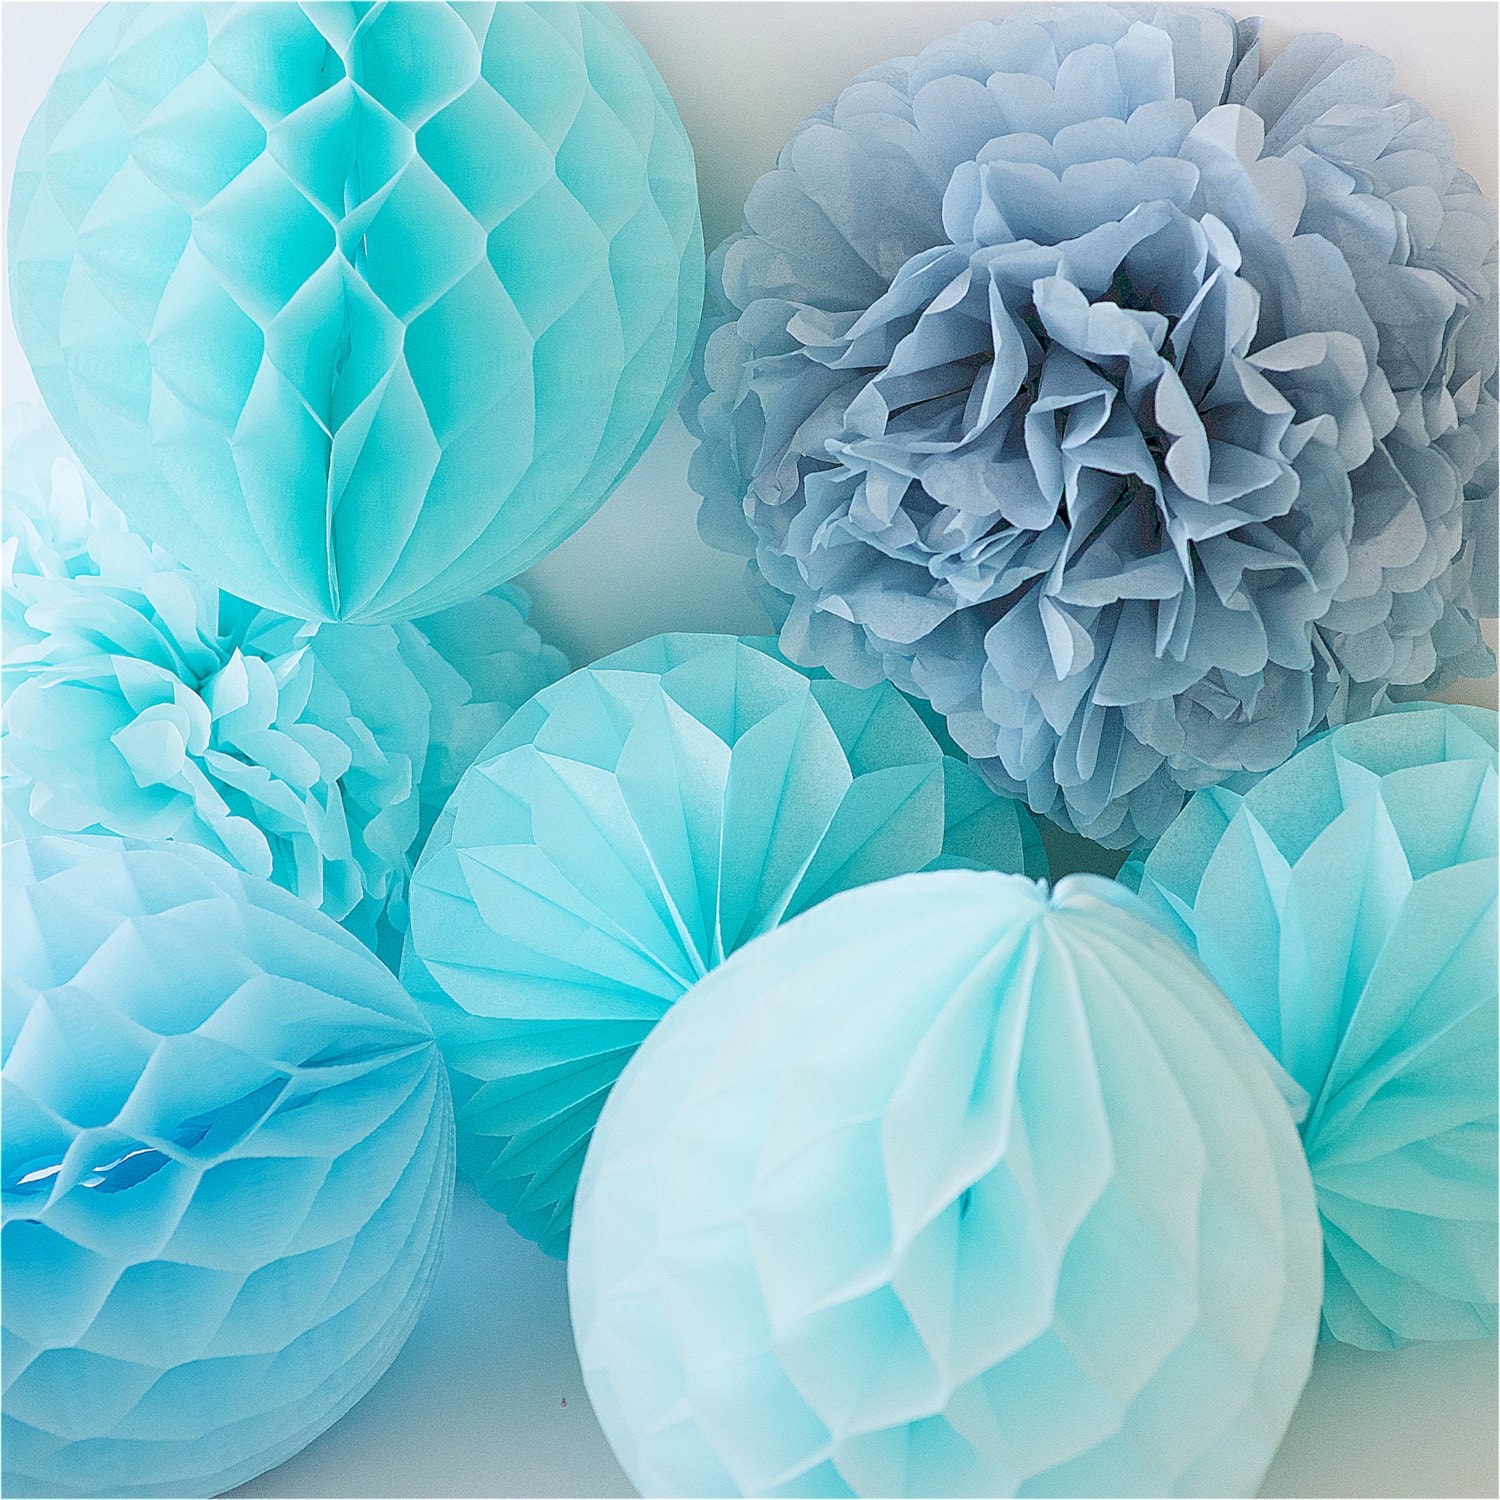 16'' Puff Tissue Paper Balls - Pastel Blue 1 Piece